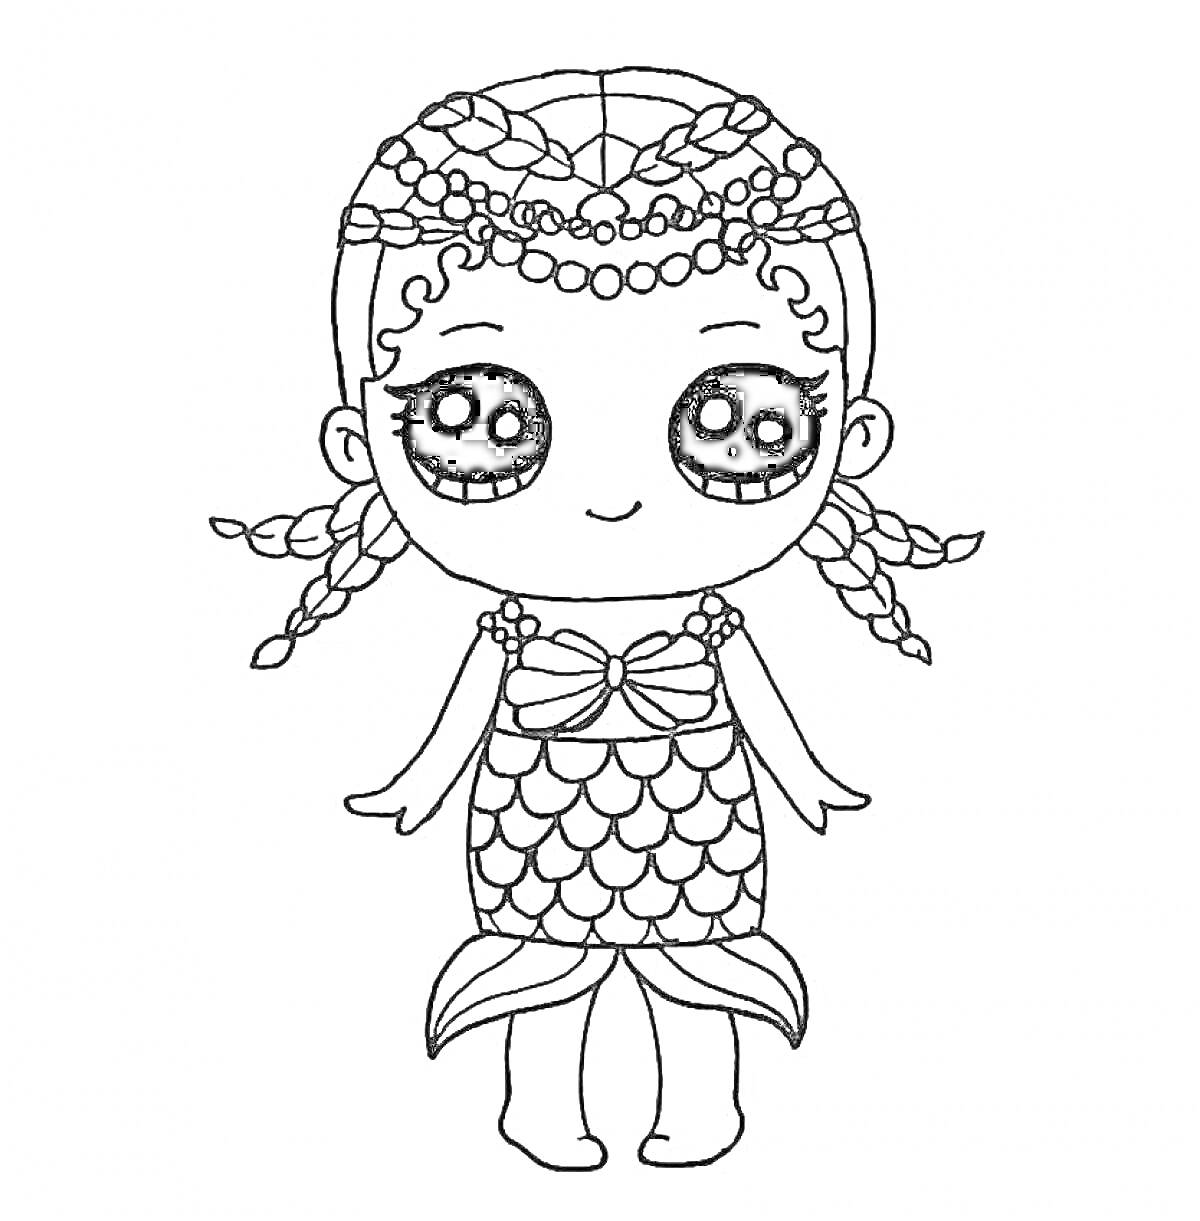 Раскраска Девочка ЛОЛ с косичками в образе русалки с чешуйчатым хвостом, украшенная бисером и бантами.